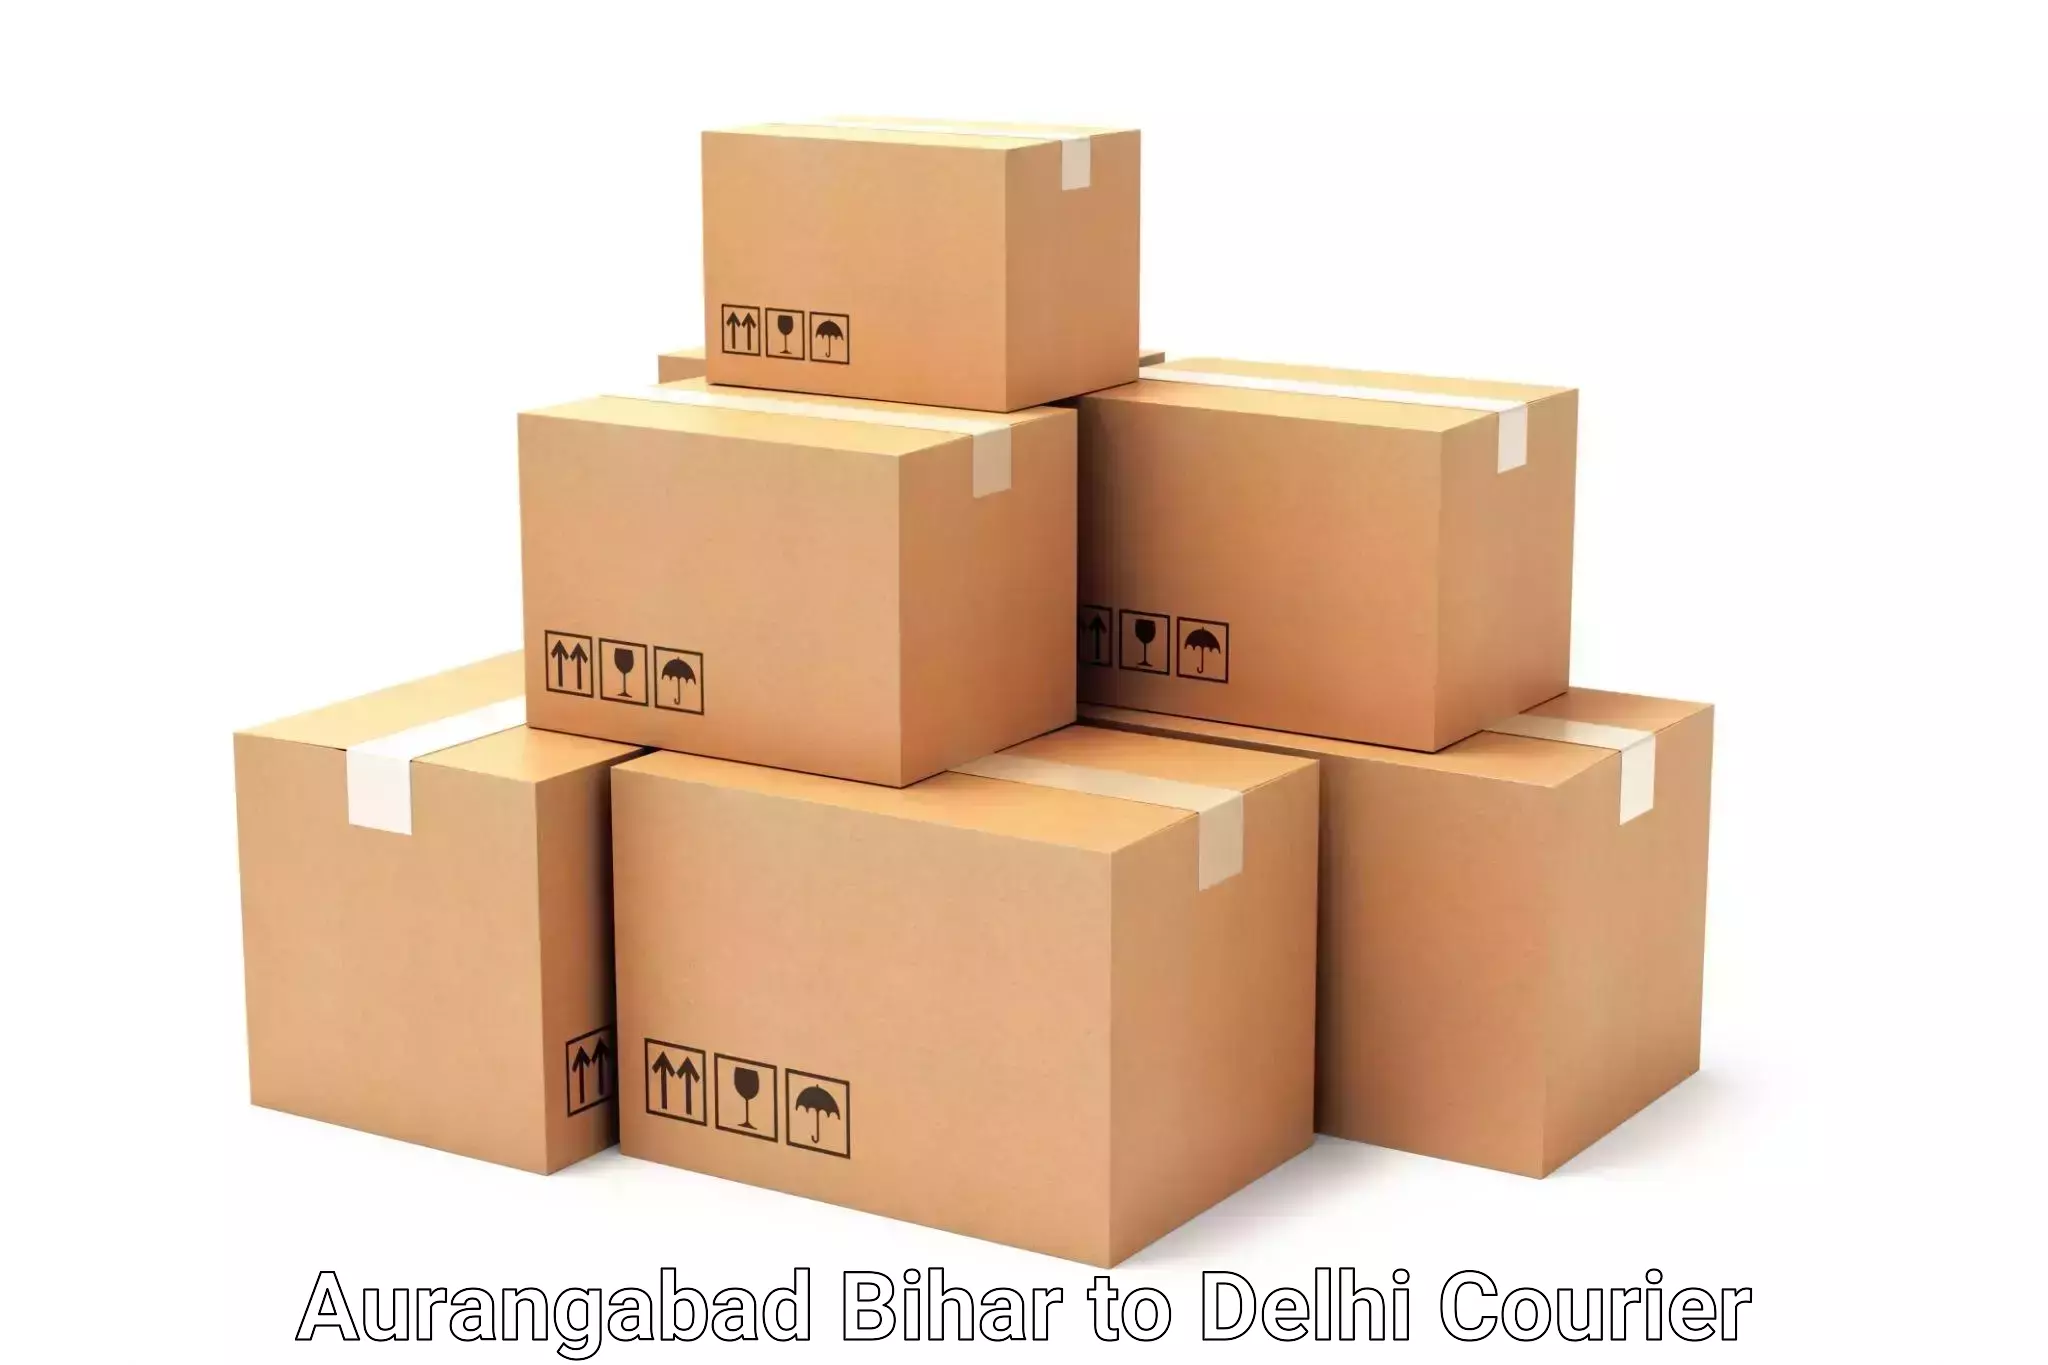 Baggage delivery optimization Aurangabad Bihar to Delhi Technological University DTU